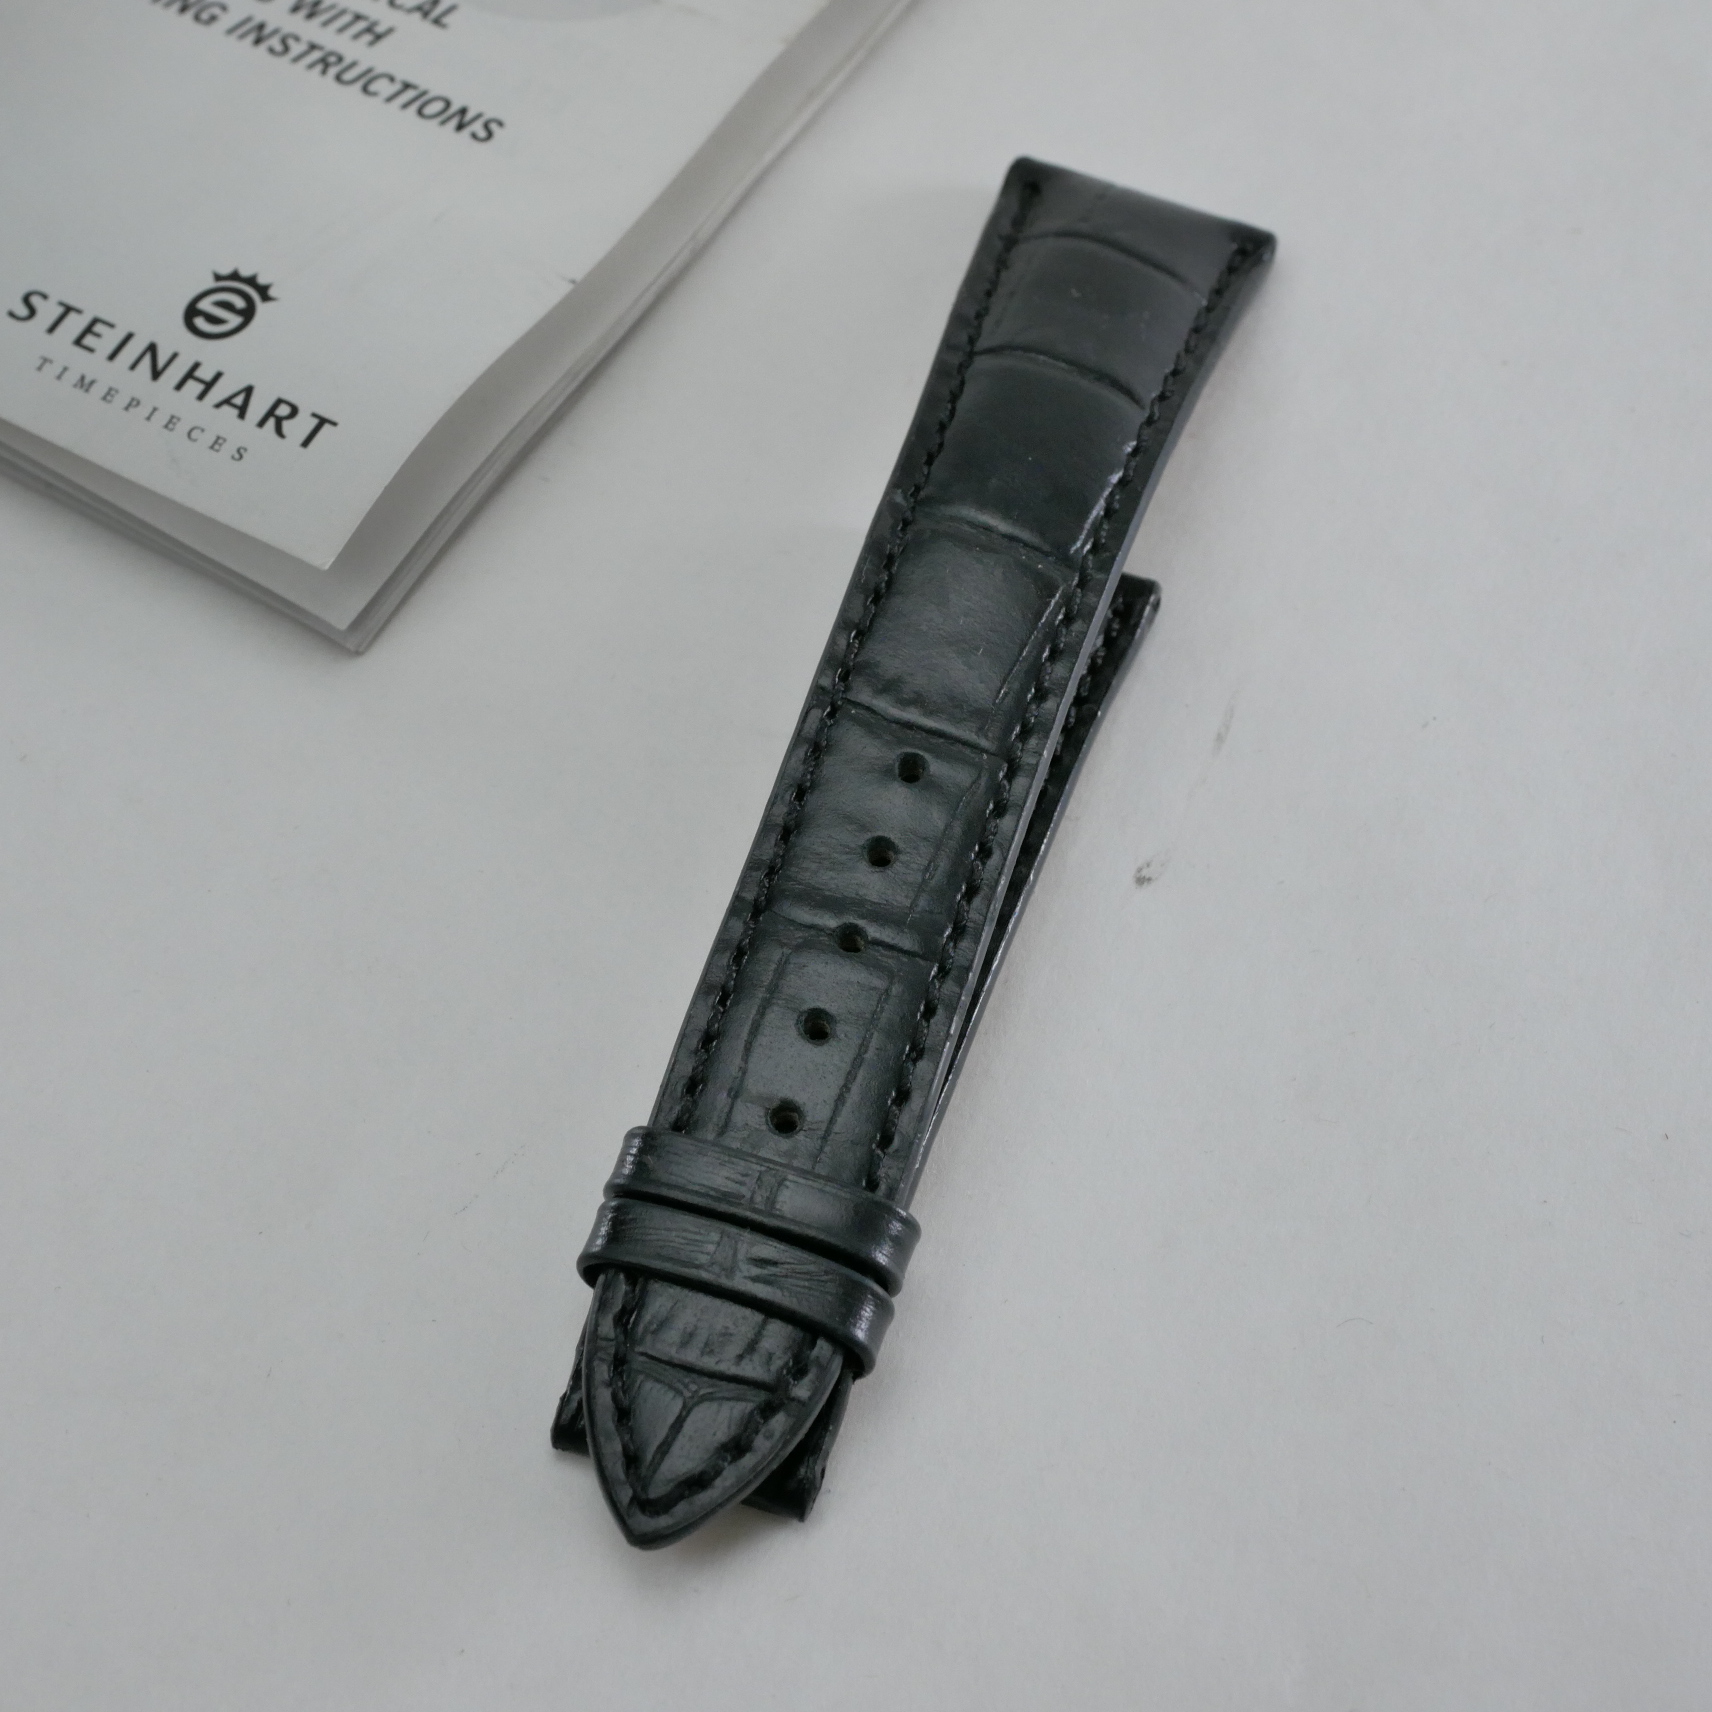 Steinhart Marine Chronometer 44 Men's Watch "Terra Incognita" Limited Edition